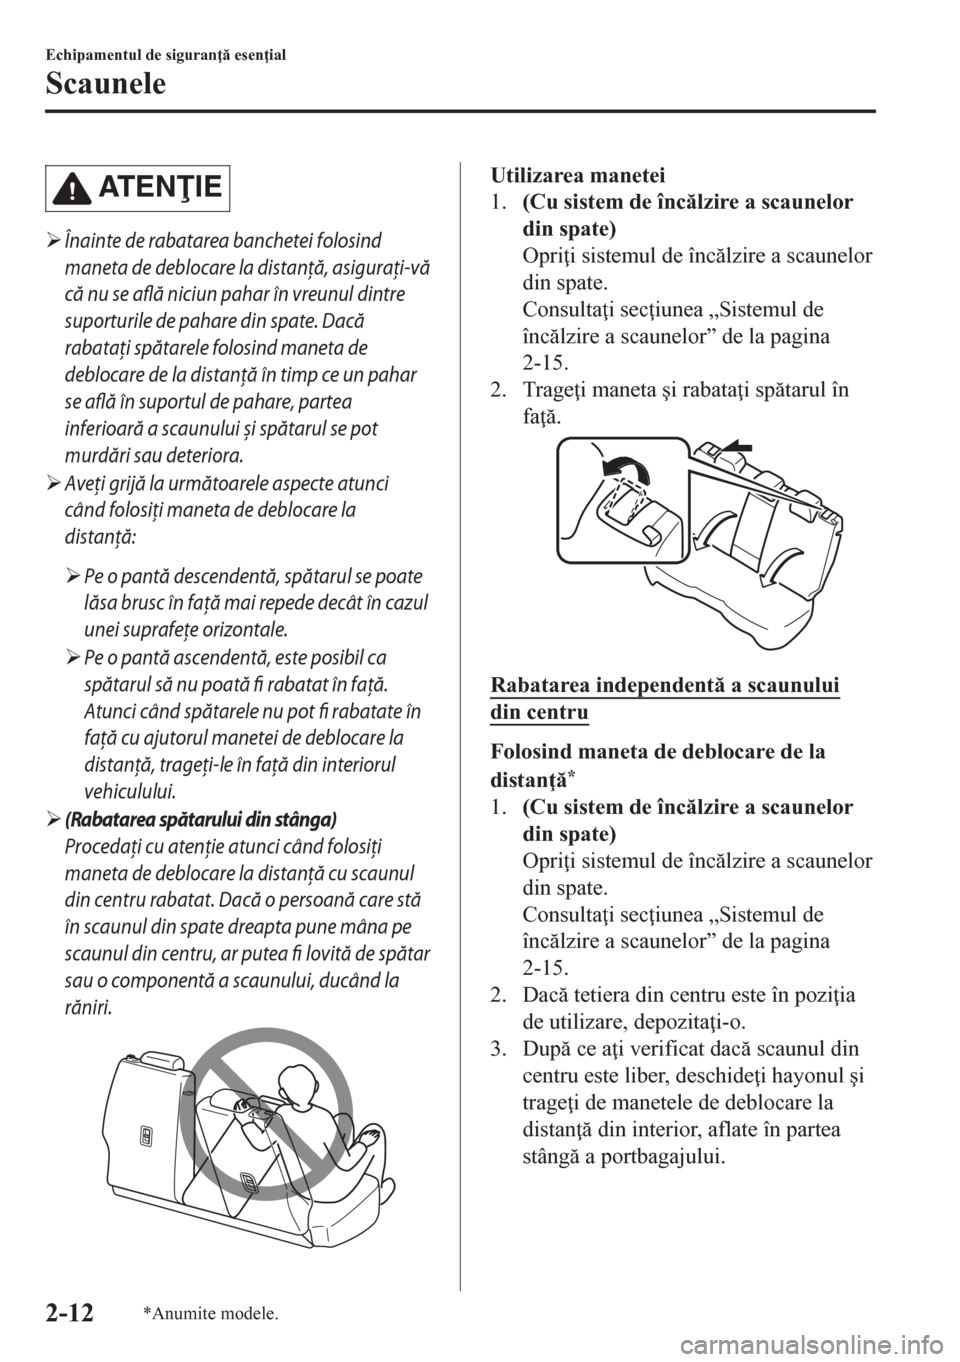 MAZDA MODEL CX-5 2018  Manualul de utilizare (in Romanian) AT E NIE
�¾Înainte de rabatarea banchetei folosind
maneta de deblocare la distanţă, asiguraţi-vă
că nu se află niciun pahar în vreunul dintre
suporturile de pahare din spate. Dacă
rabataţ